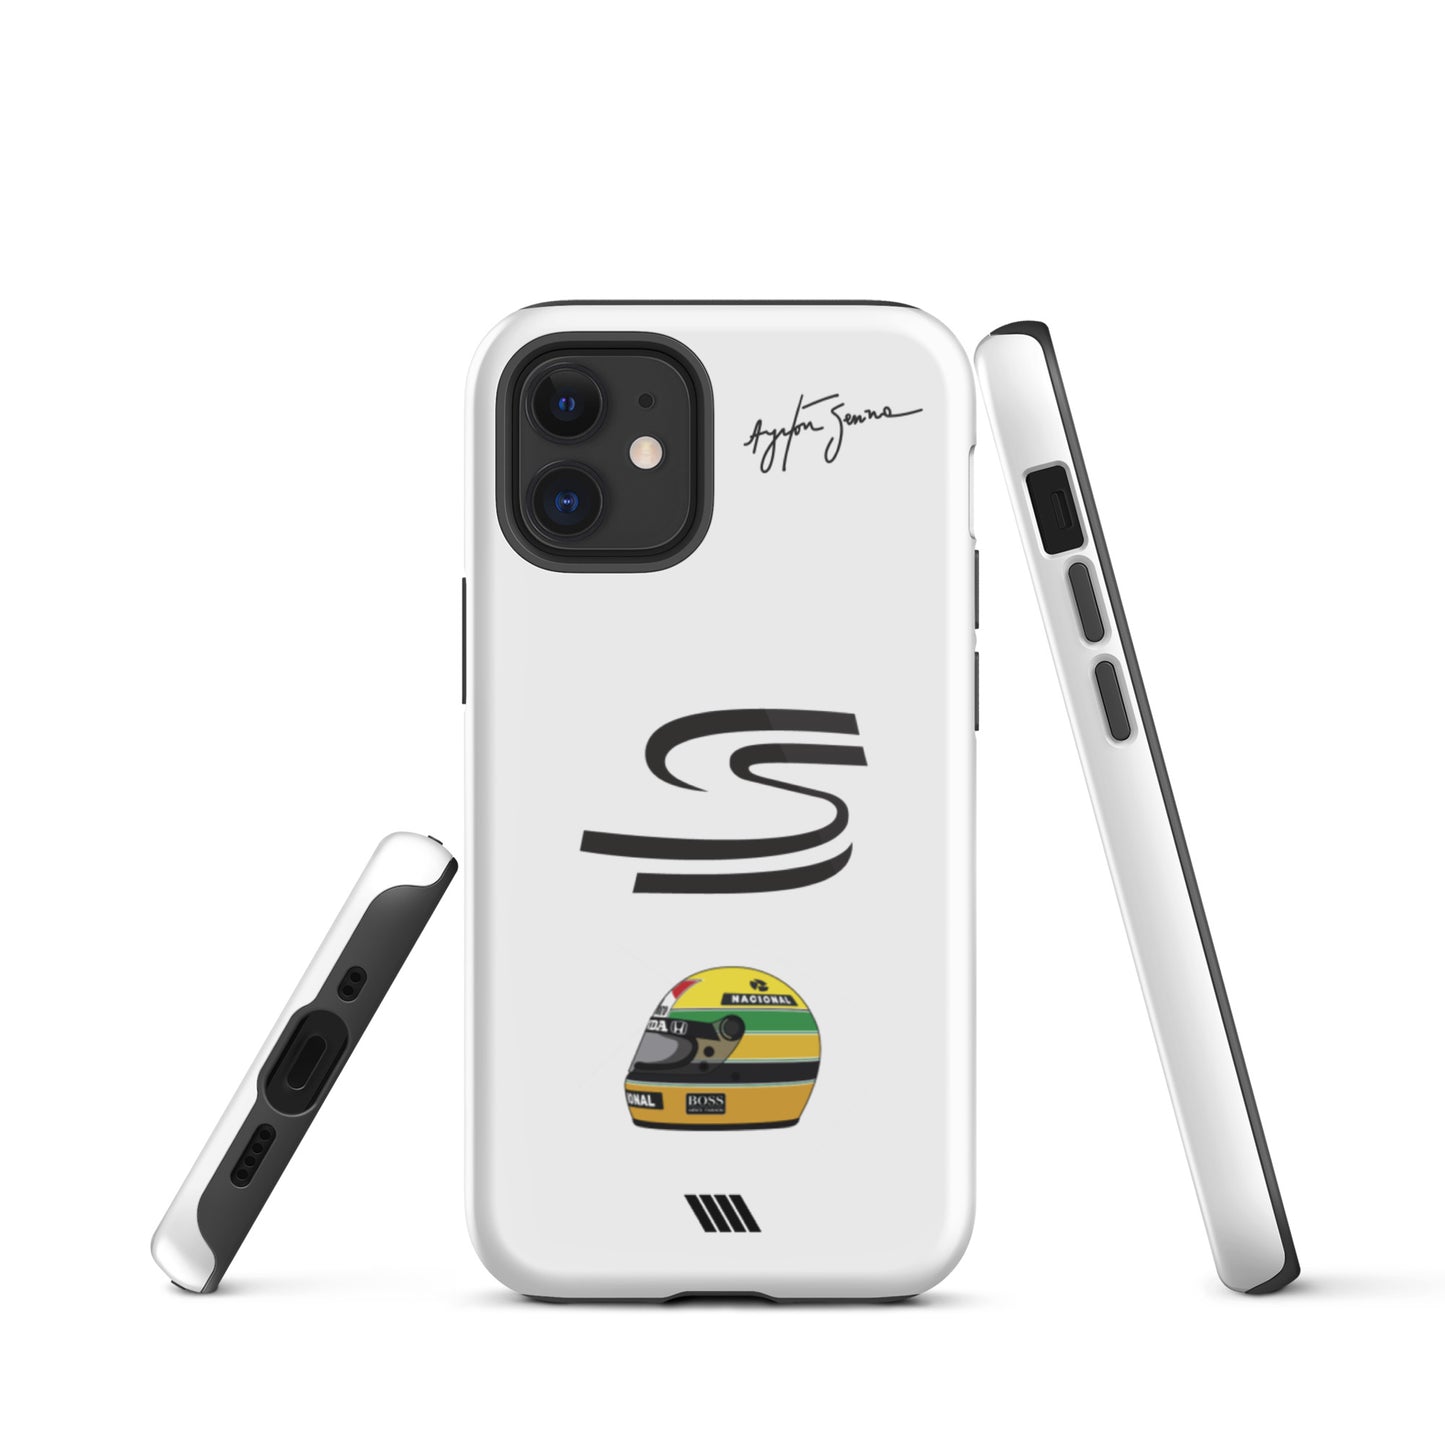 Ayrton Senna Tough iPhone case